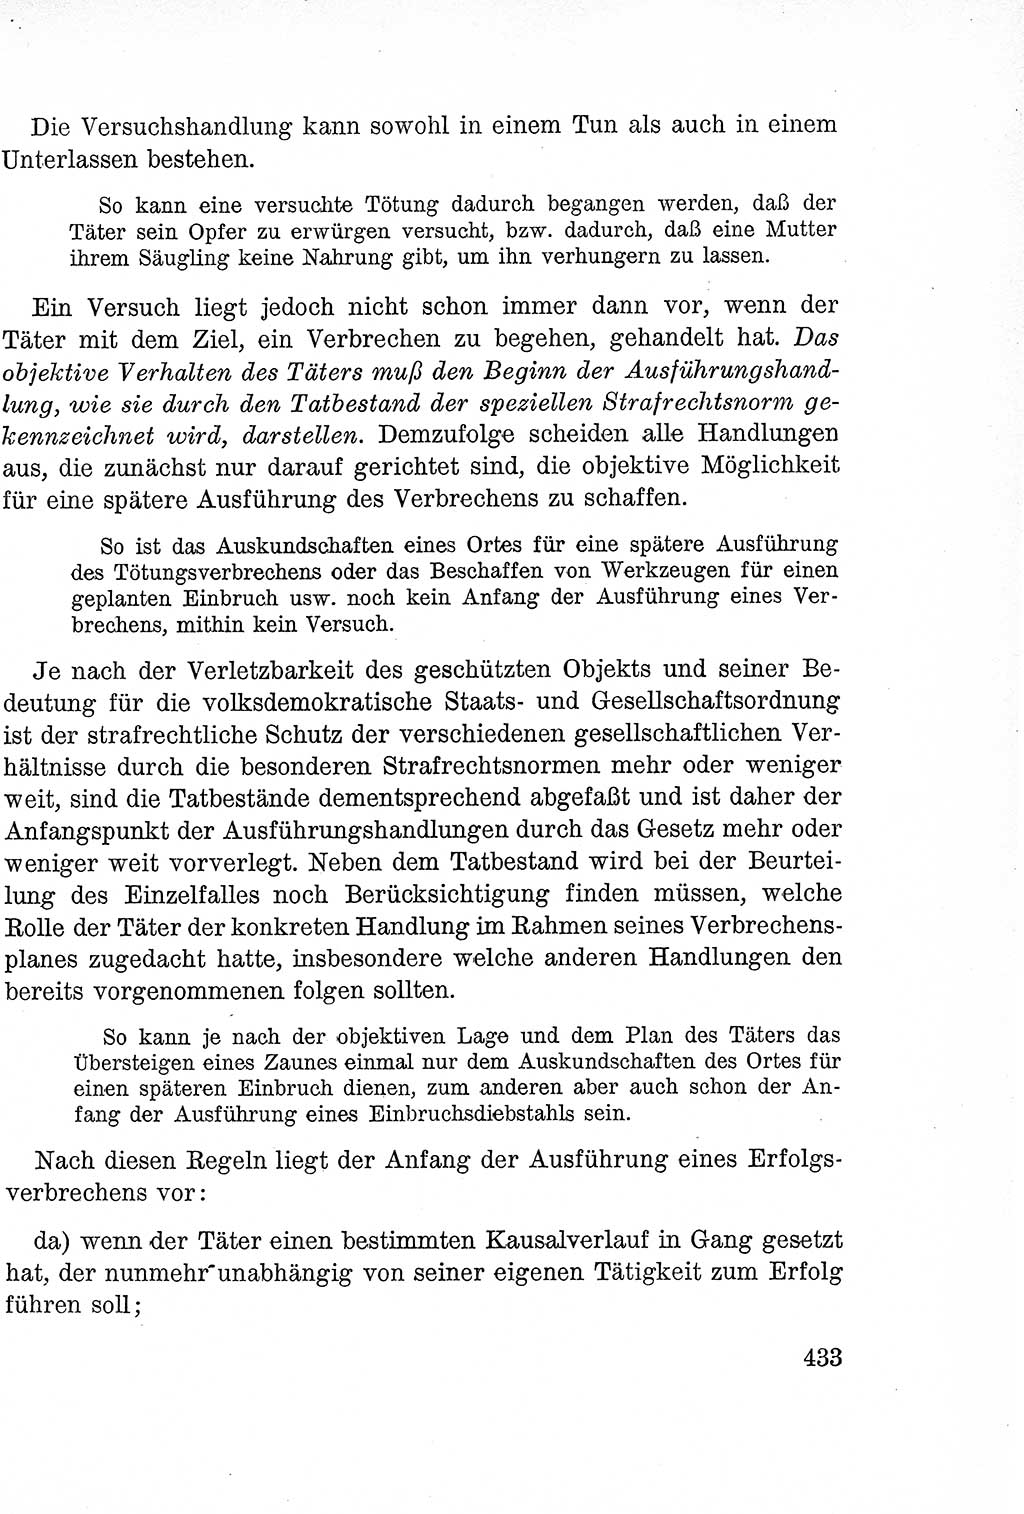 Lehrbuch des Strafrechts der Deutschen Demokratischen Republik (DDR), Allgemeiner Teil 1957, Seite 433 (Lb. Strafr. DDR AT 1957, S. 433)